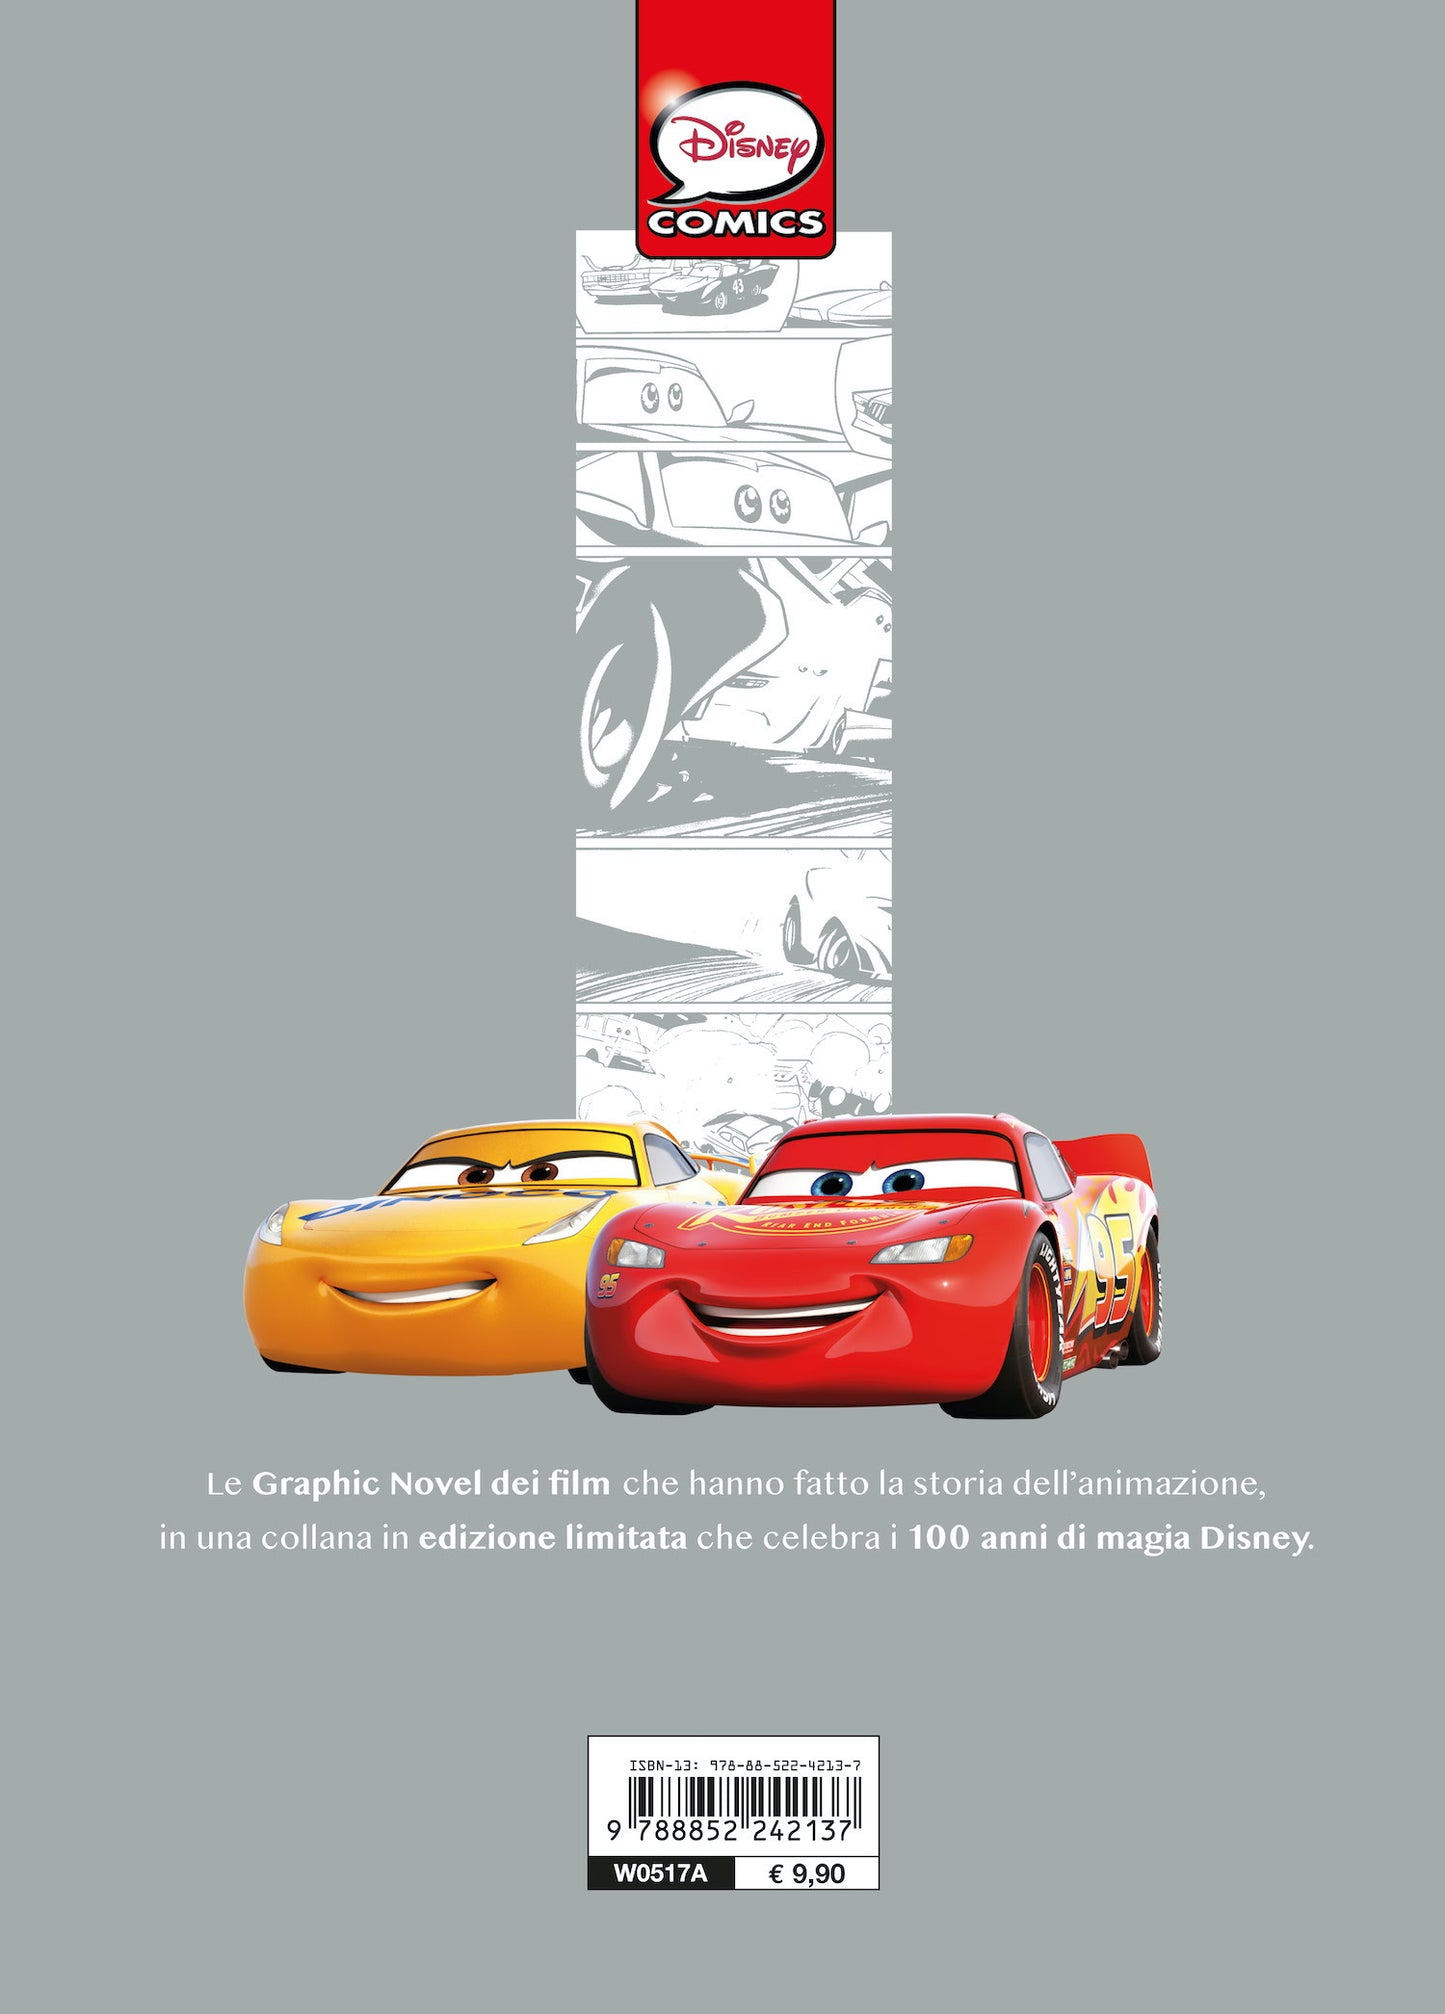 Cars Motori ruggenti La storia a fumetti Edizione limitata::Disney 100 Anni di meravigliose emozioni